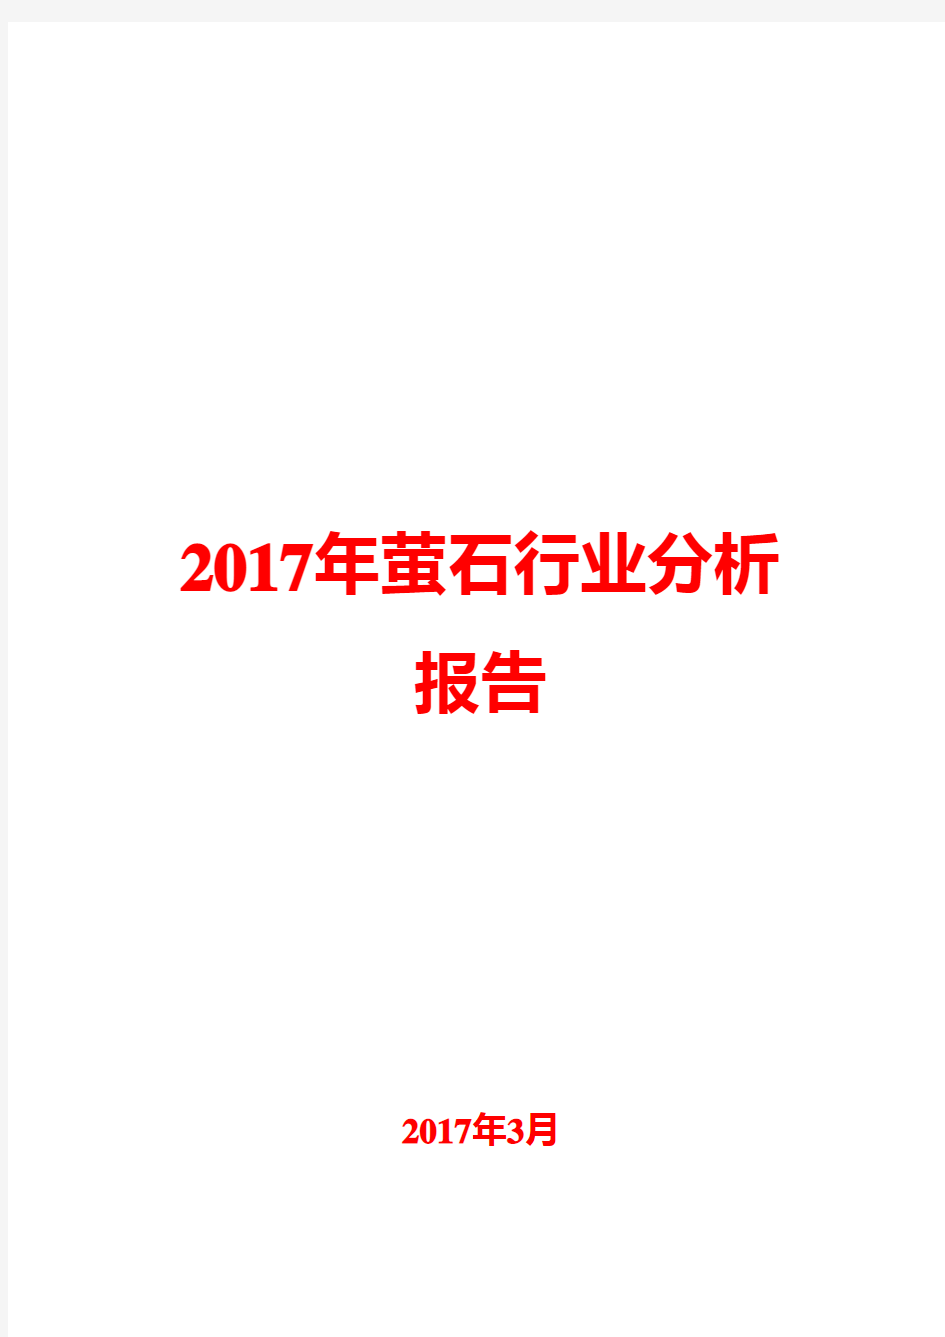 2017年萤石行业分析报告